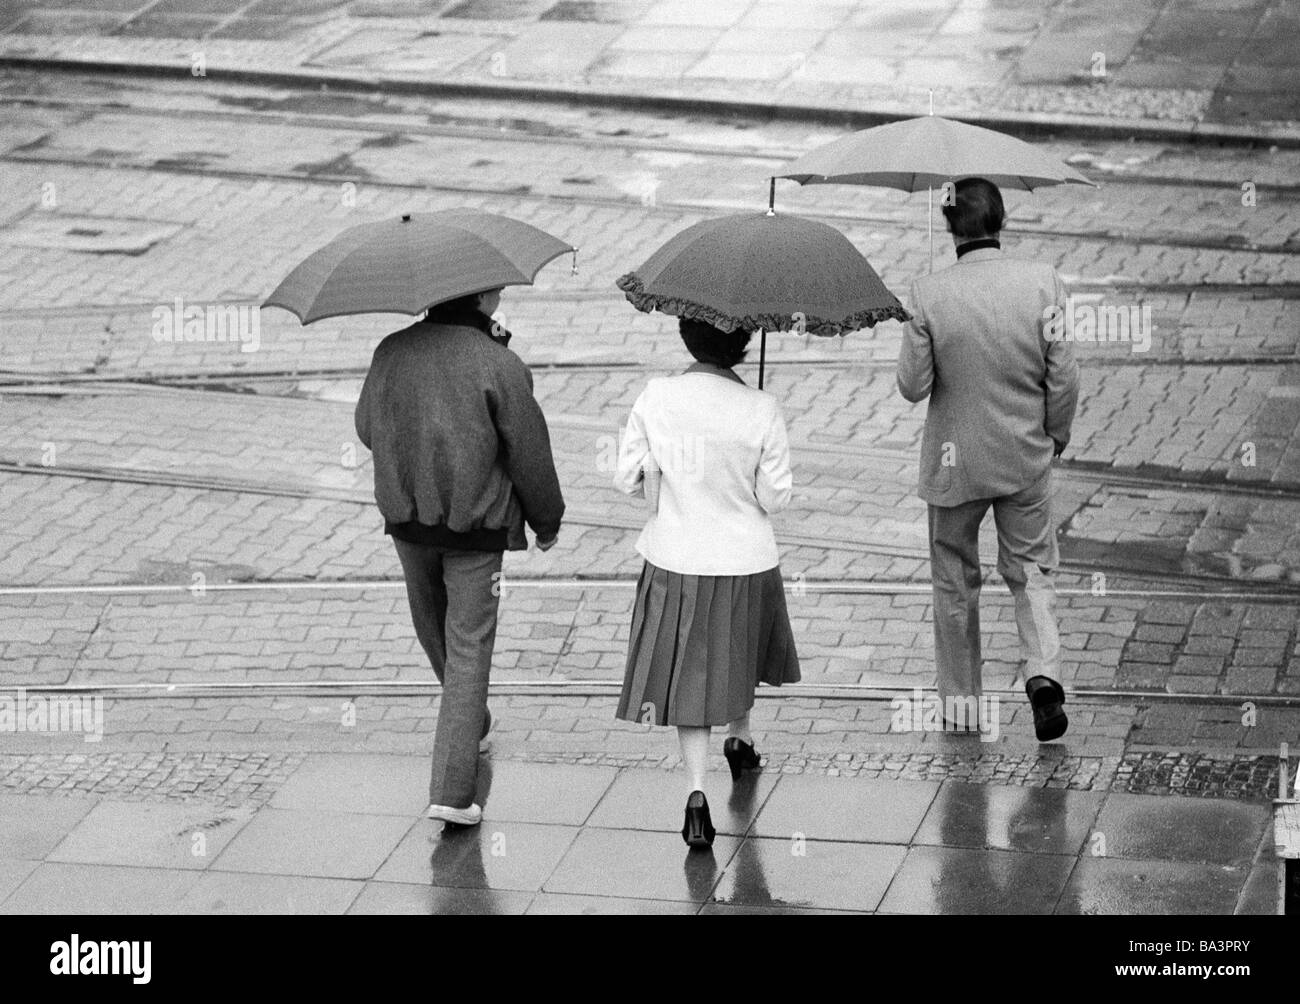 80, fotografía en blanco y negro, la familia se compromete a caminar bajo la lluvia, paraguas, hombre, de edades entre 40 y 50 años, mujer, con edades de 30 a 40 años, niño, a la edad de 14 a 16 años Foto de stock